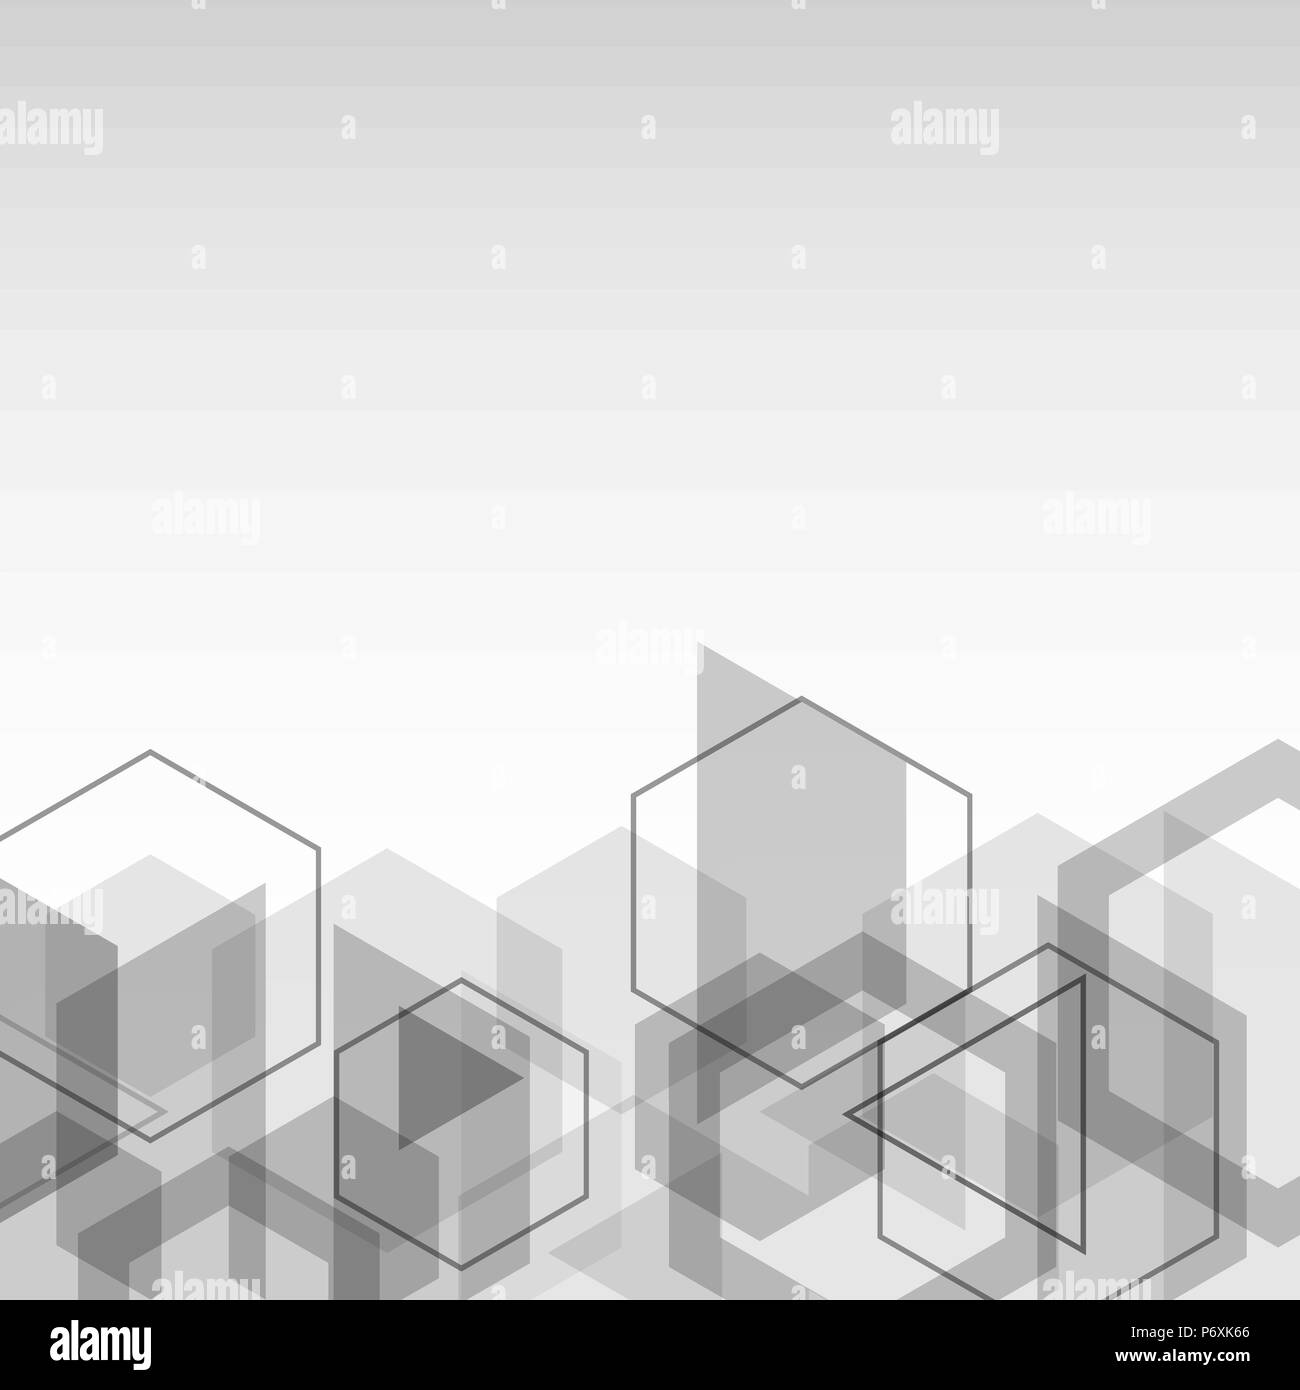 Zusammenfassung Hintergrund mit grauen Würfel geometrische Form, Vektor Stock Vektor